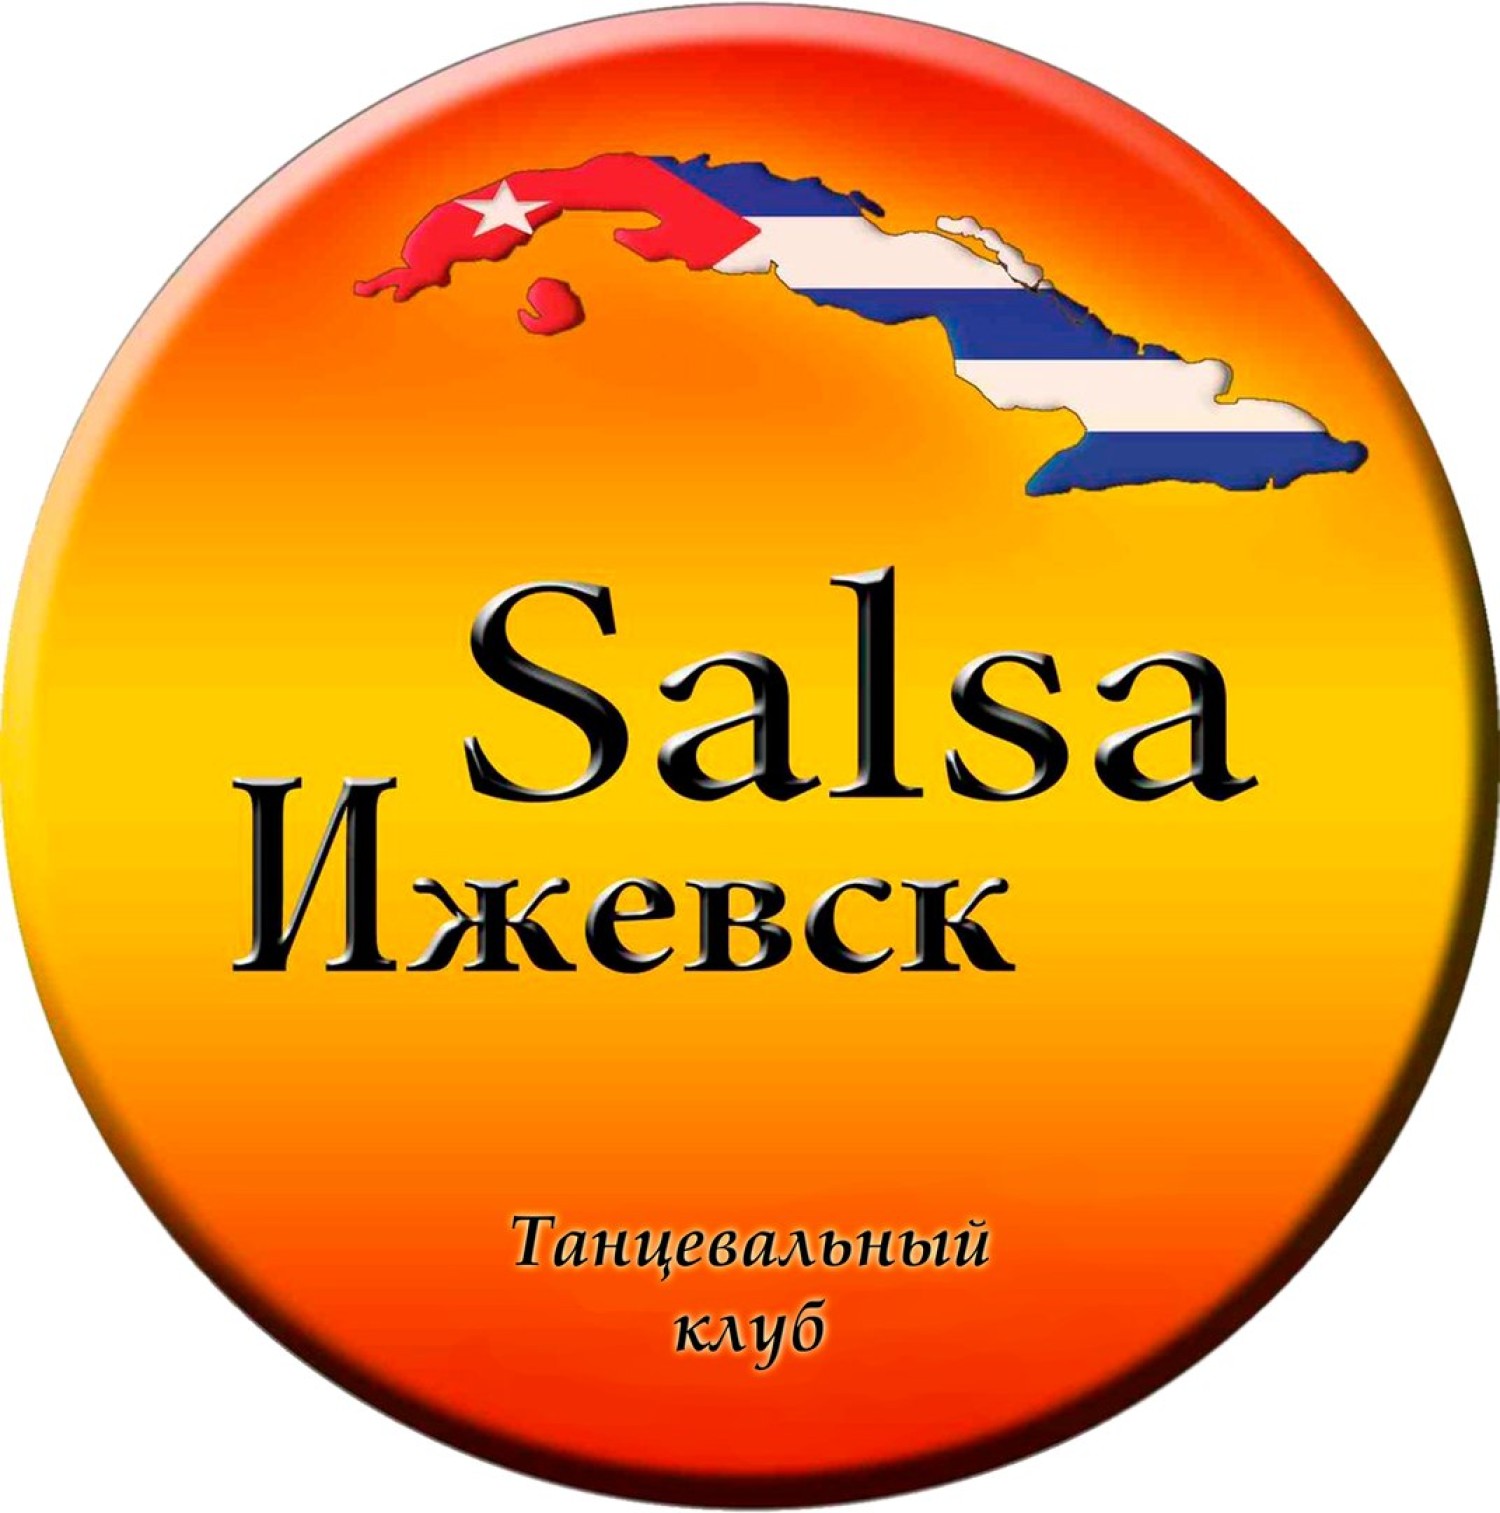 Танцевальный клуб "Salsa Ижевск"